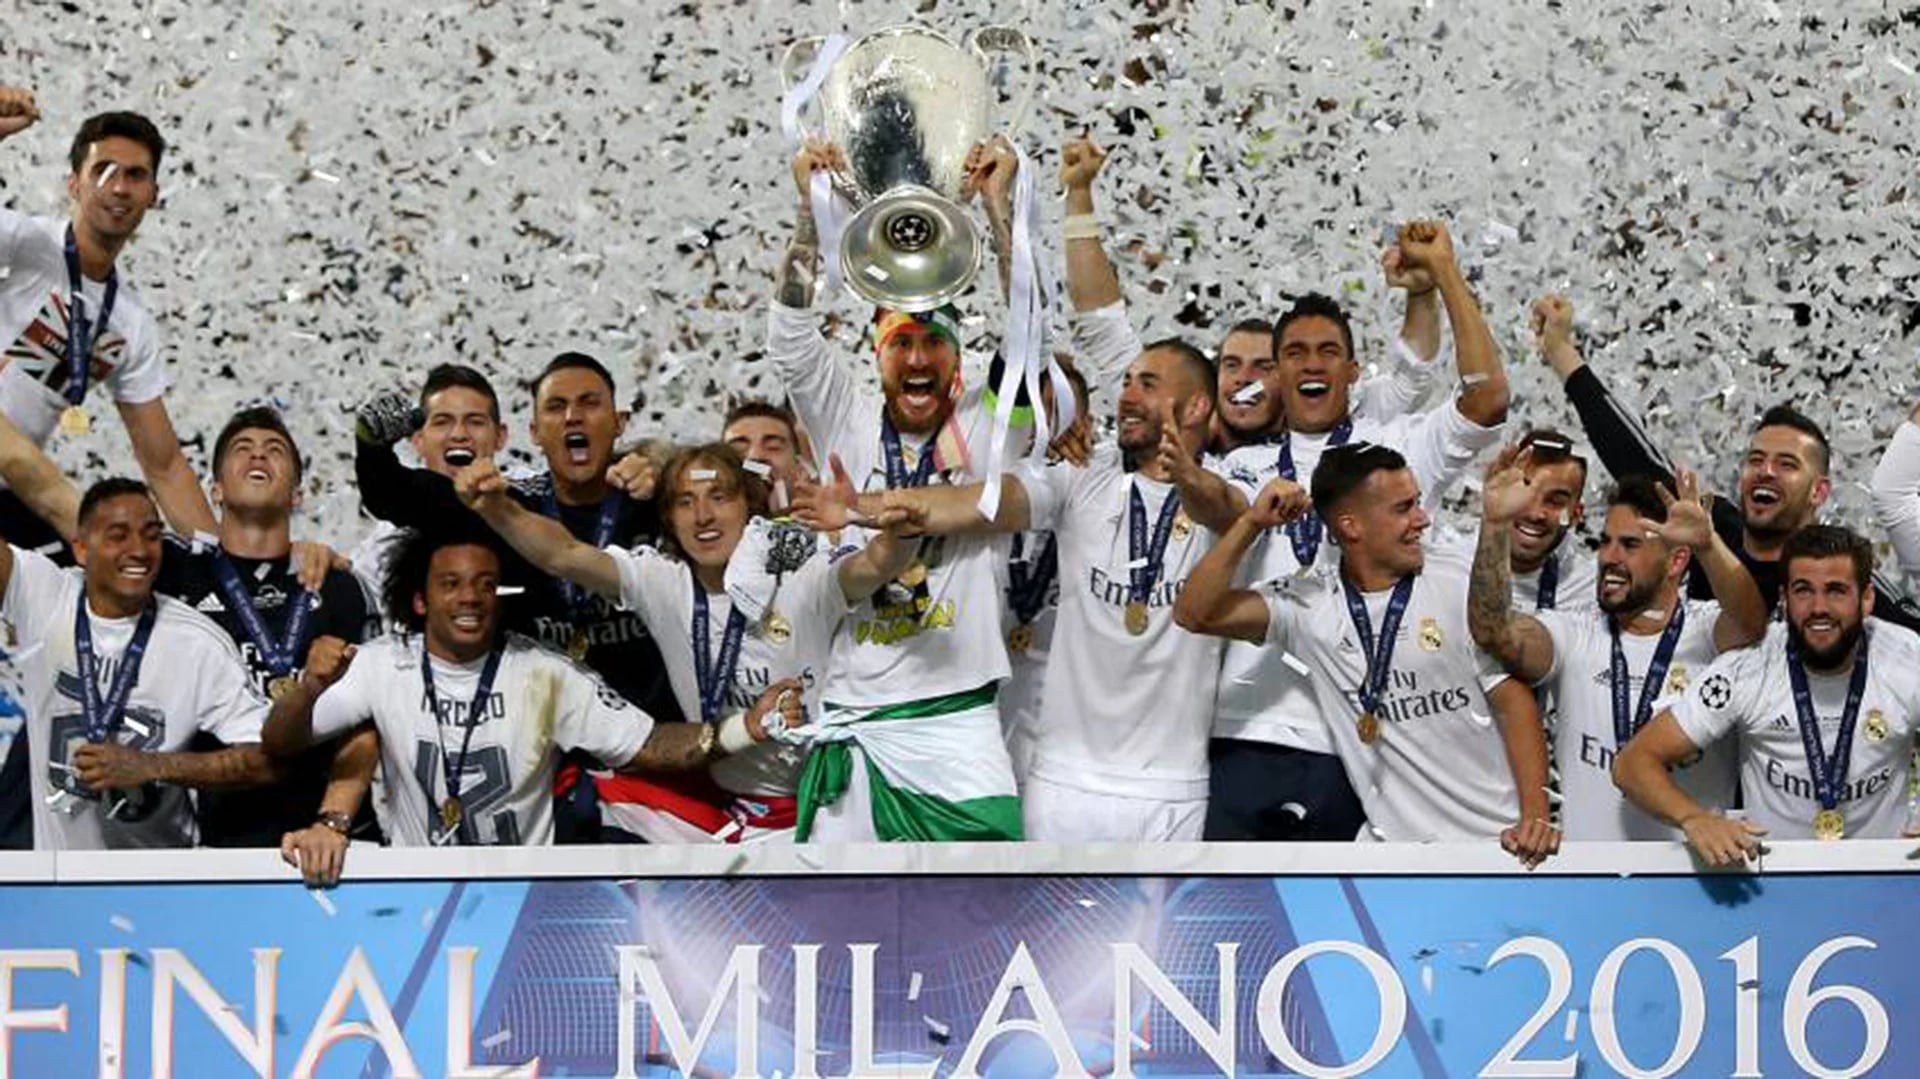 Los merengues consiguieron la Champions League en 2016